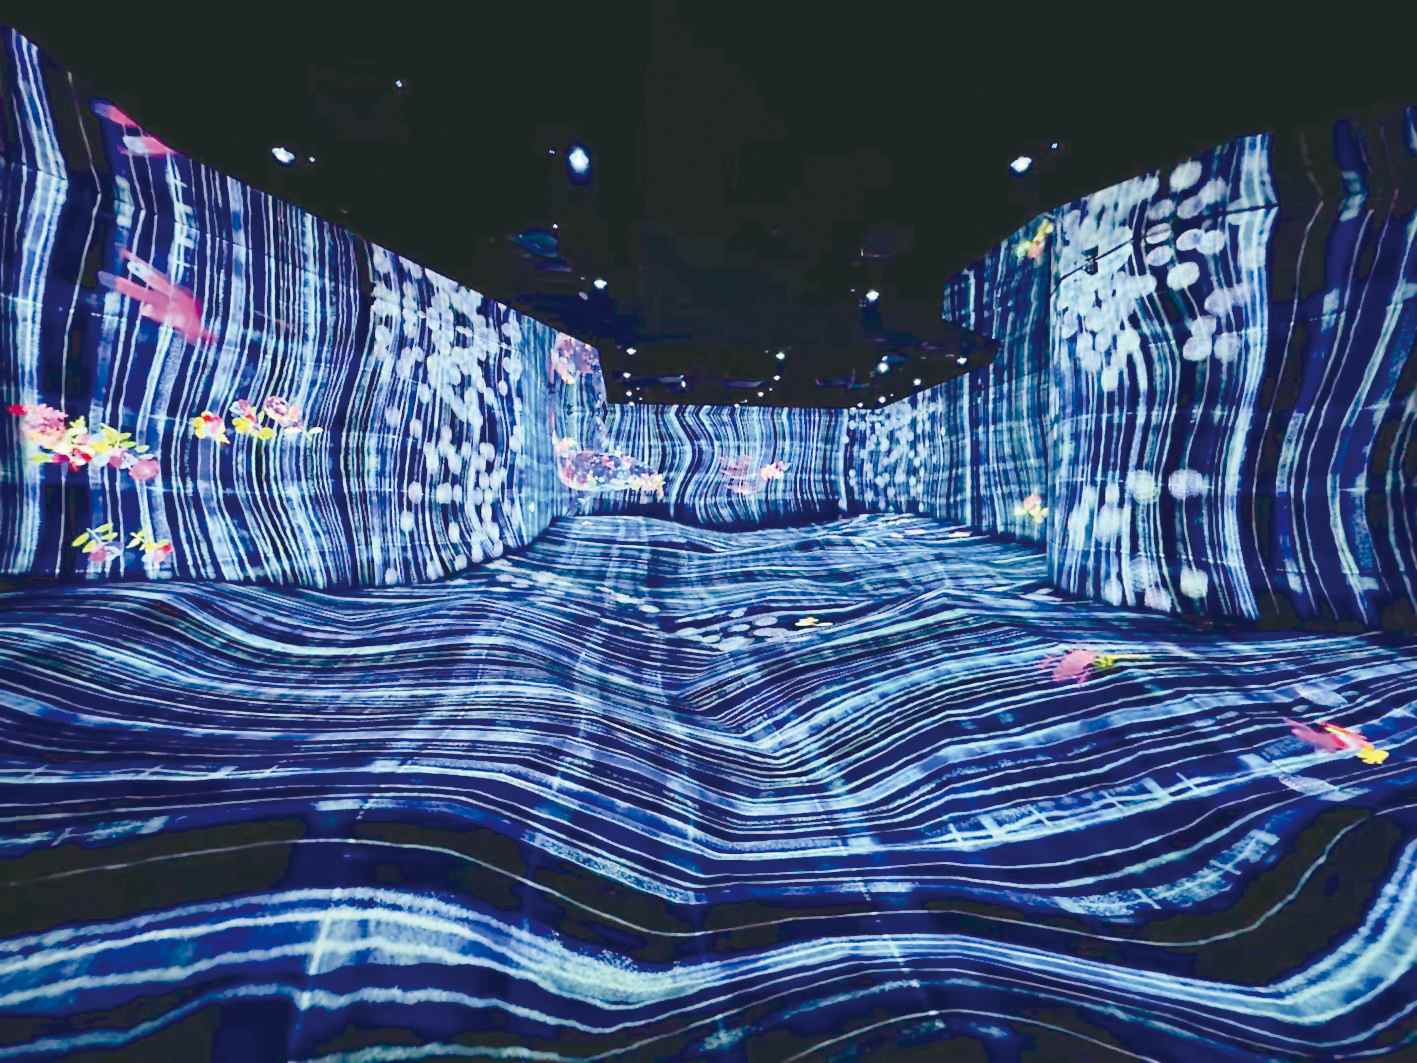 teamLab打造的大型沉浸式美术馆“无相艺术空间”